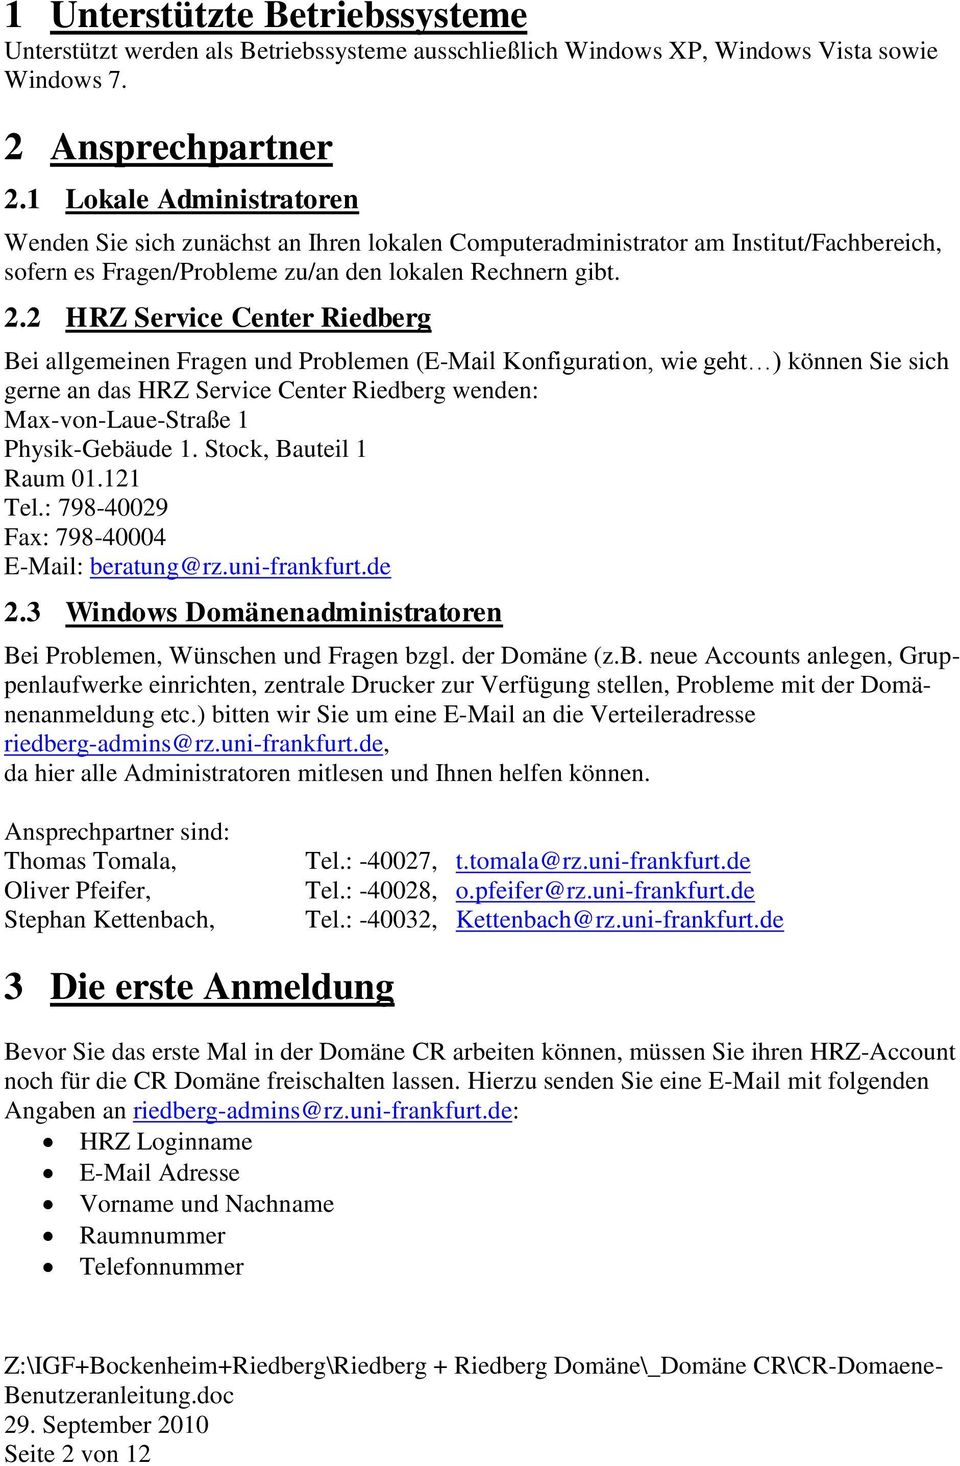 2 HRZ Service Center Riedberg Bei allgemeinen Fragen und Problemen (E-Mail Konfiguration, wie geht ) können Sie sich gerne an das HRZ Service Center Riedberg wenden: Max-von-Laue-Straße 1